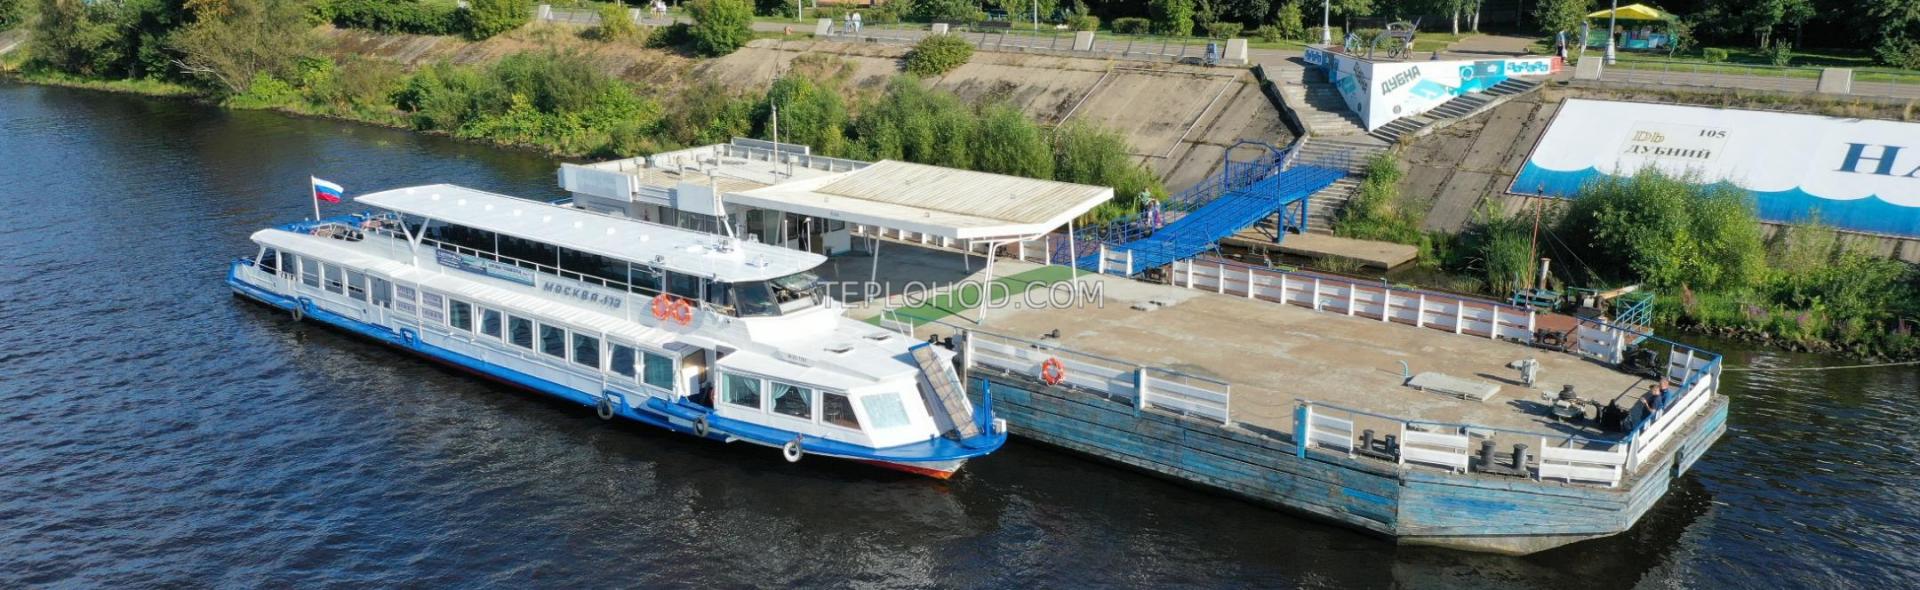 Обзорный экспресс-круиз по Московскому морю в Дубне